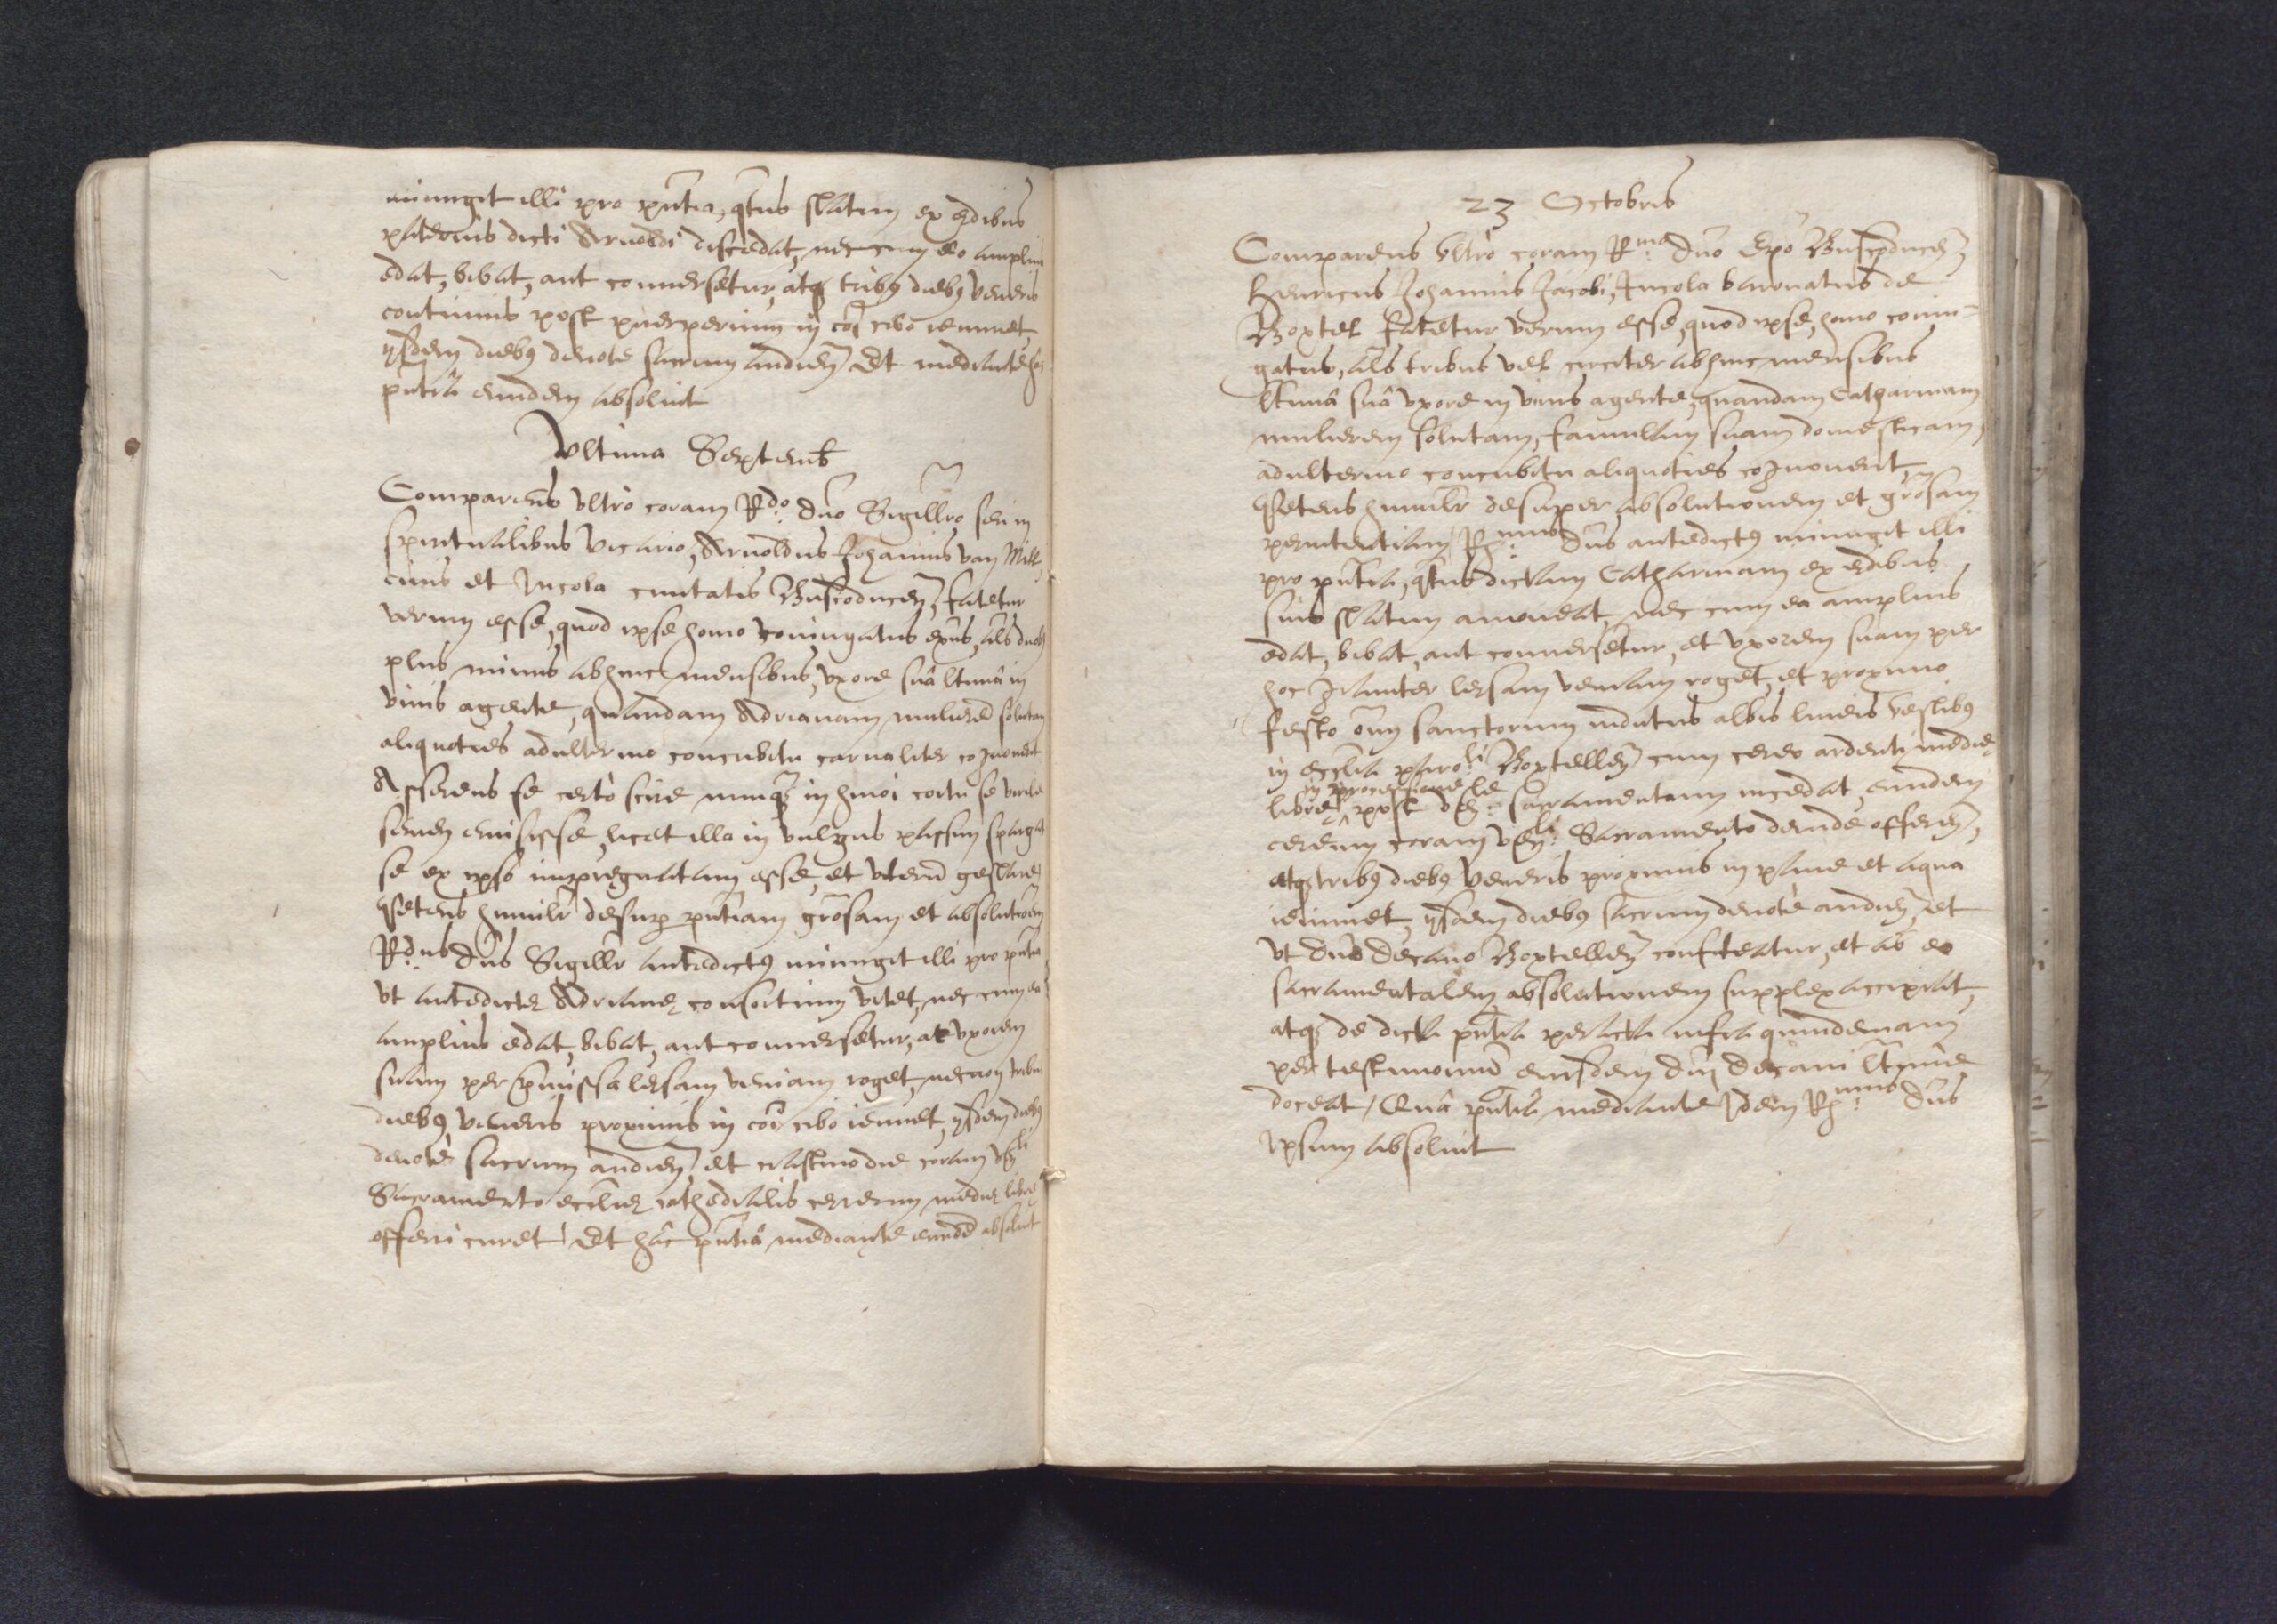 BHIC, 2147 Archief van de bisschop van 's-Hertogenbosch, 1559-circa 1650, inv.nr. 158 scan 23 (rechter pagina)